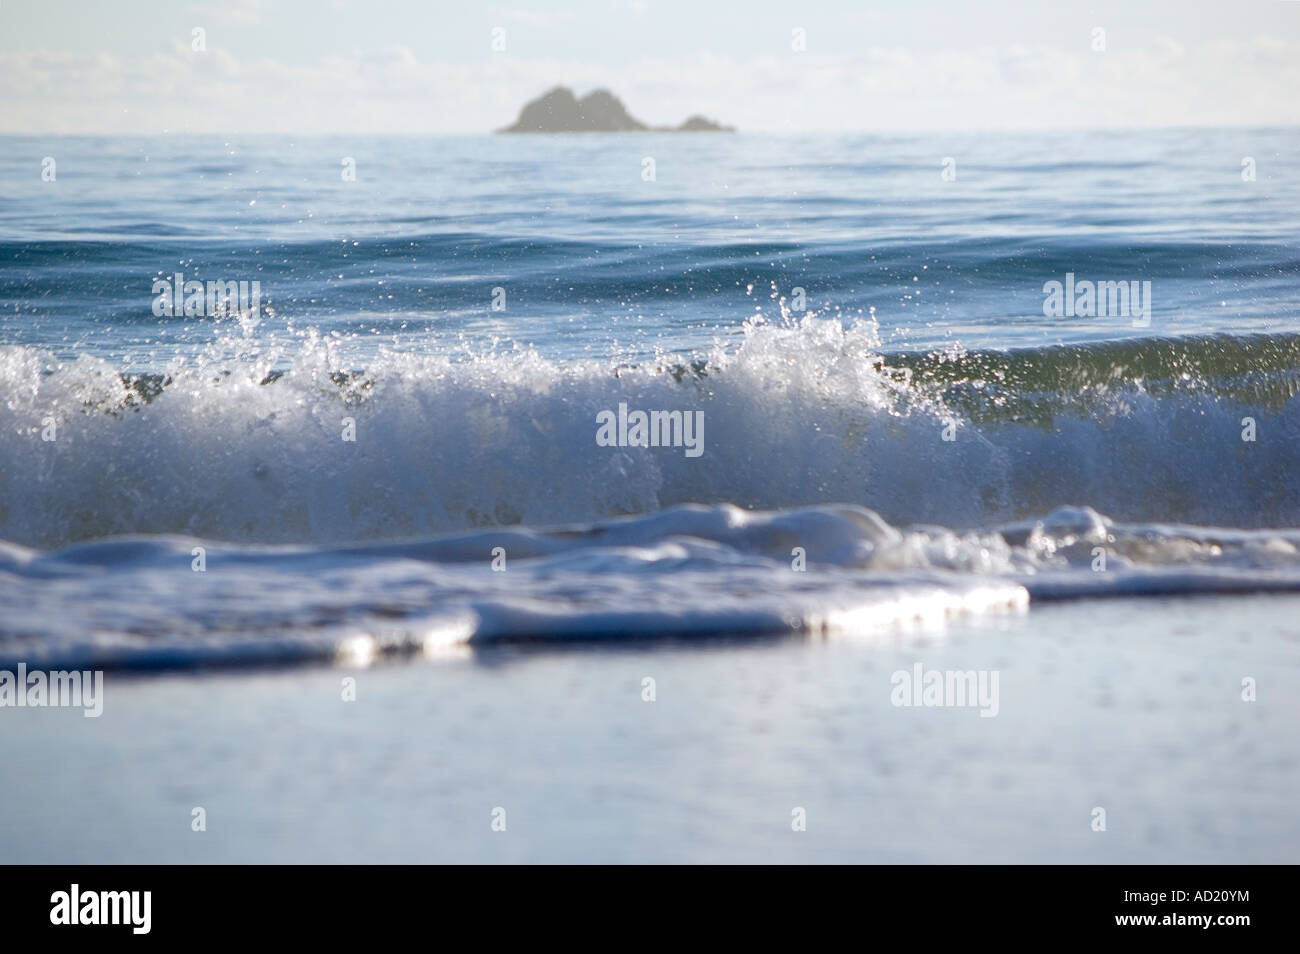 Una spiaggia molto bella scena con le onde in arrivo e raggiungere la sabbia Foto Stock